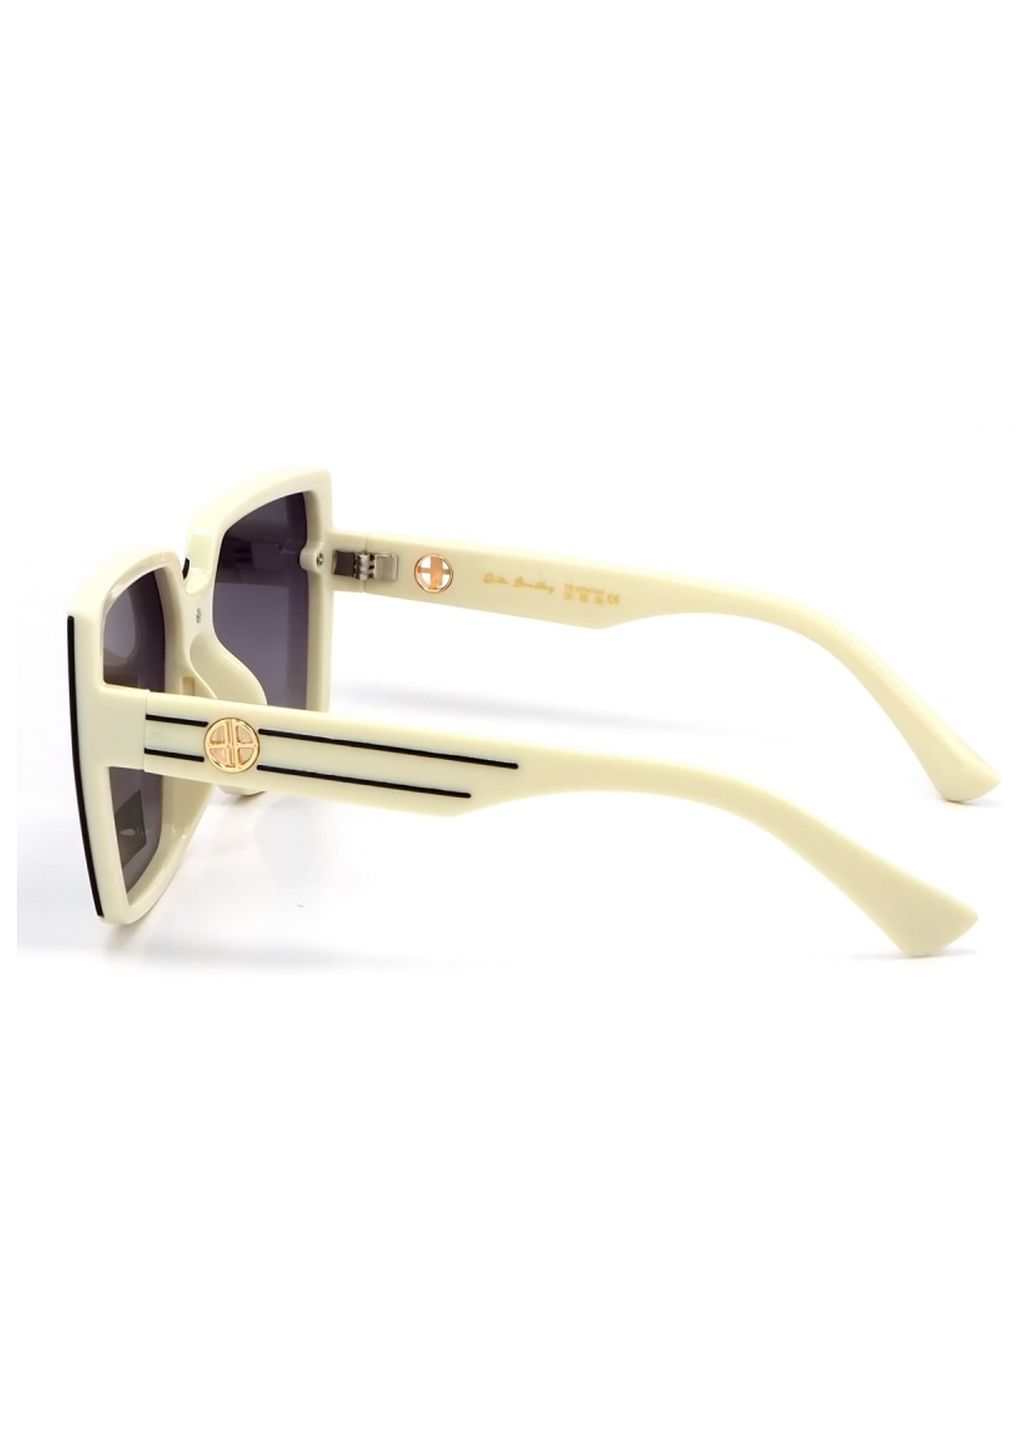 Купить Женские солнцезащитные очки Rita Bradley с поляризацией RB733 112088 в интернет-магазине